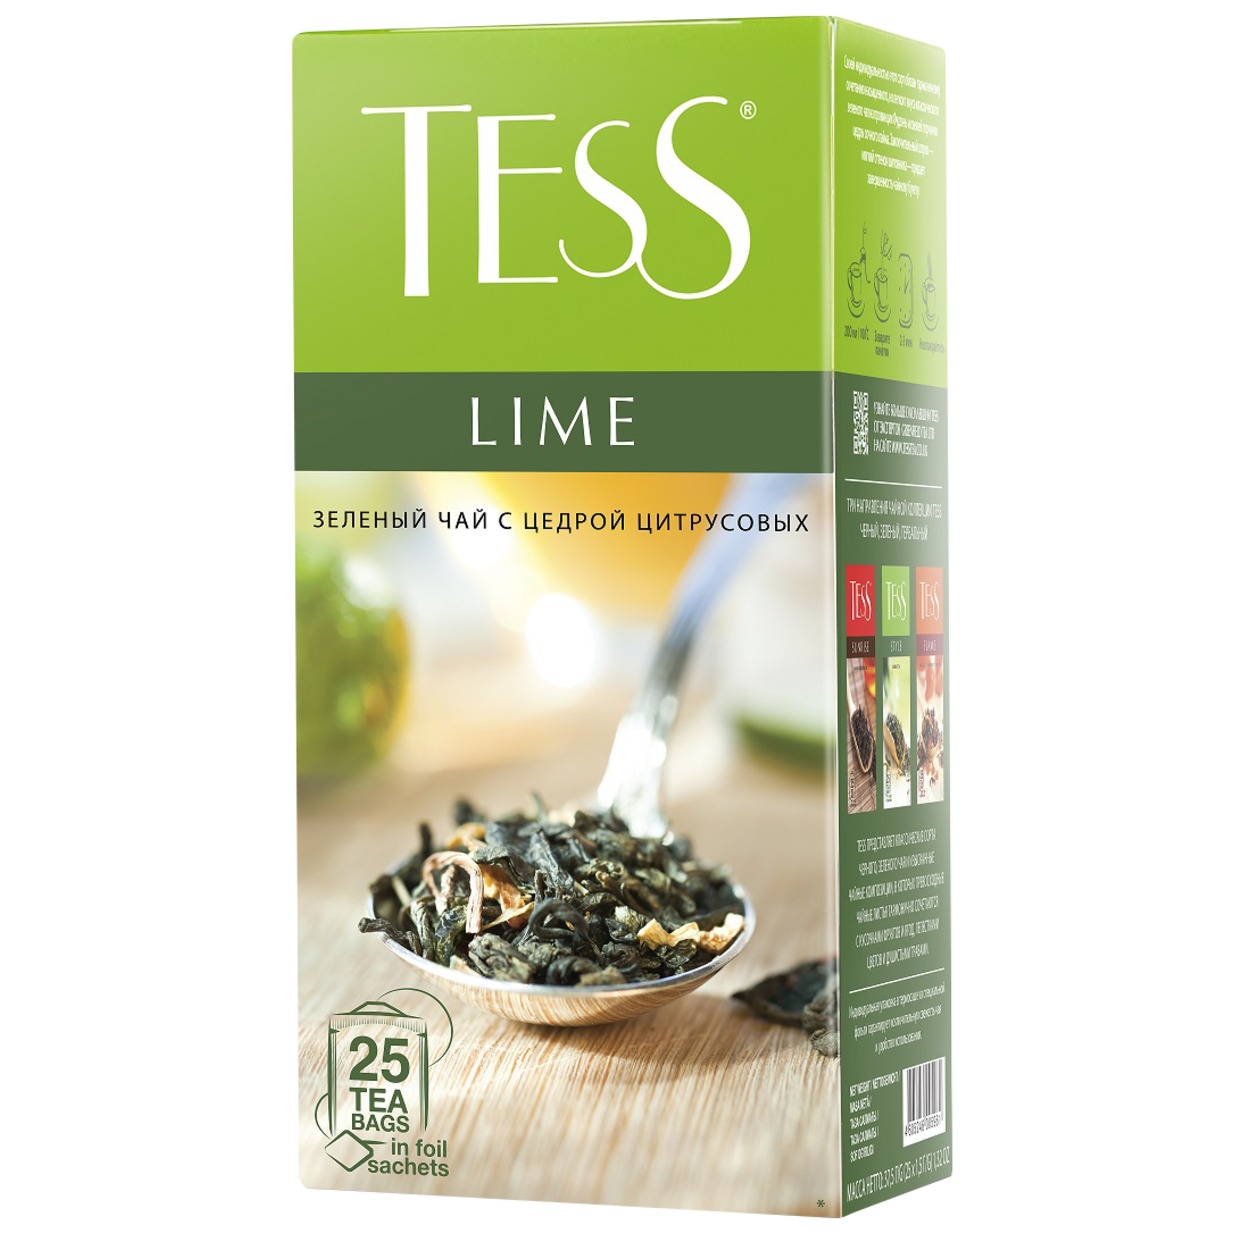 Чай Tess Lime зеленый 25пак*1,5г по акции в Пятерочке